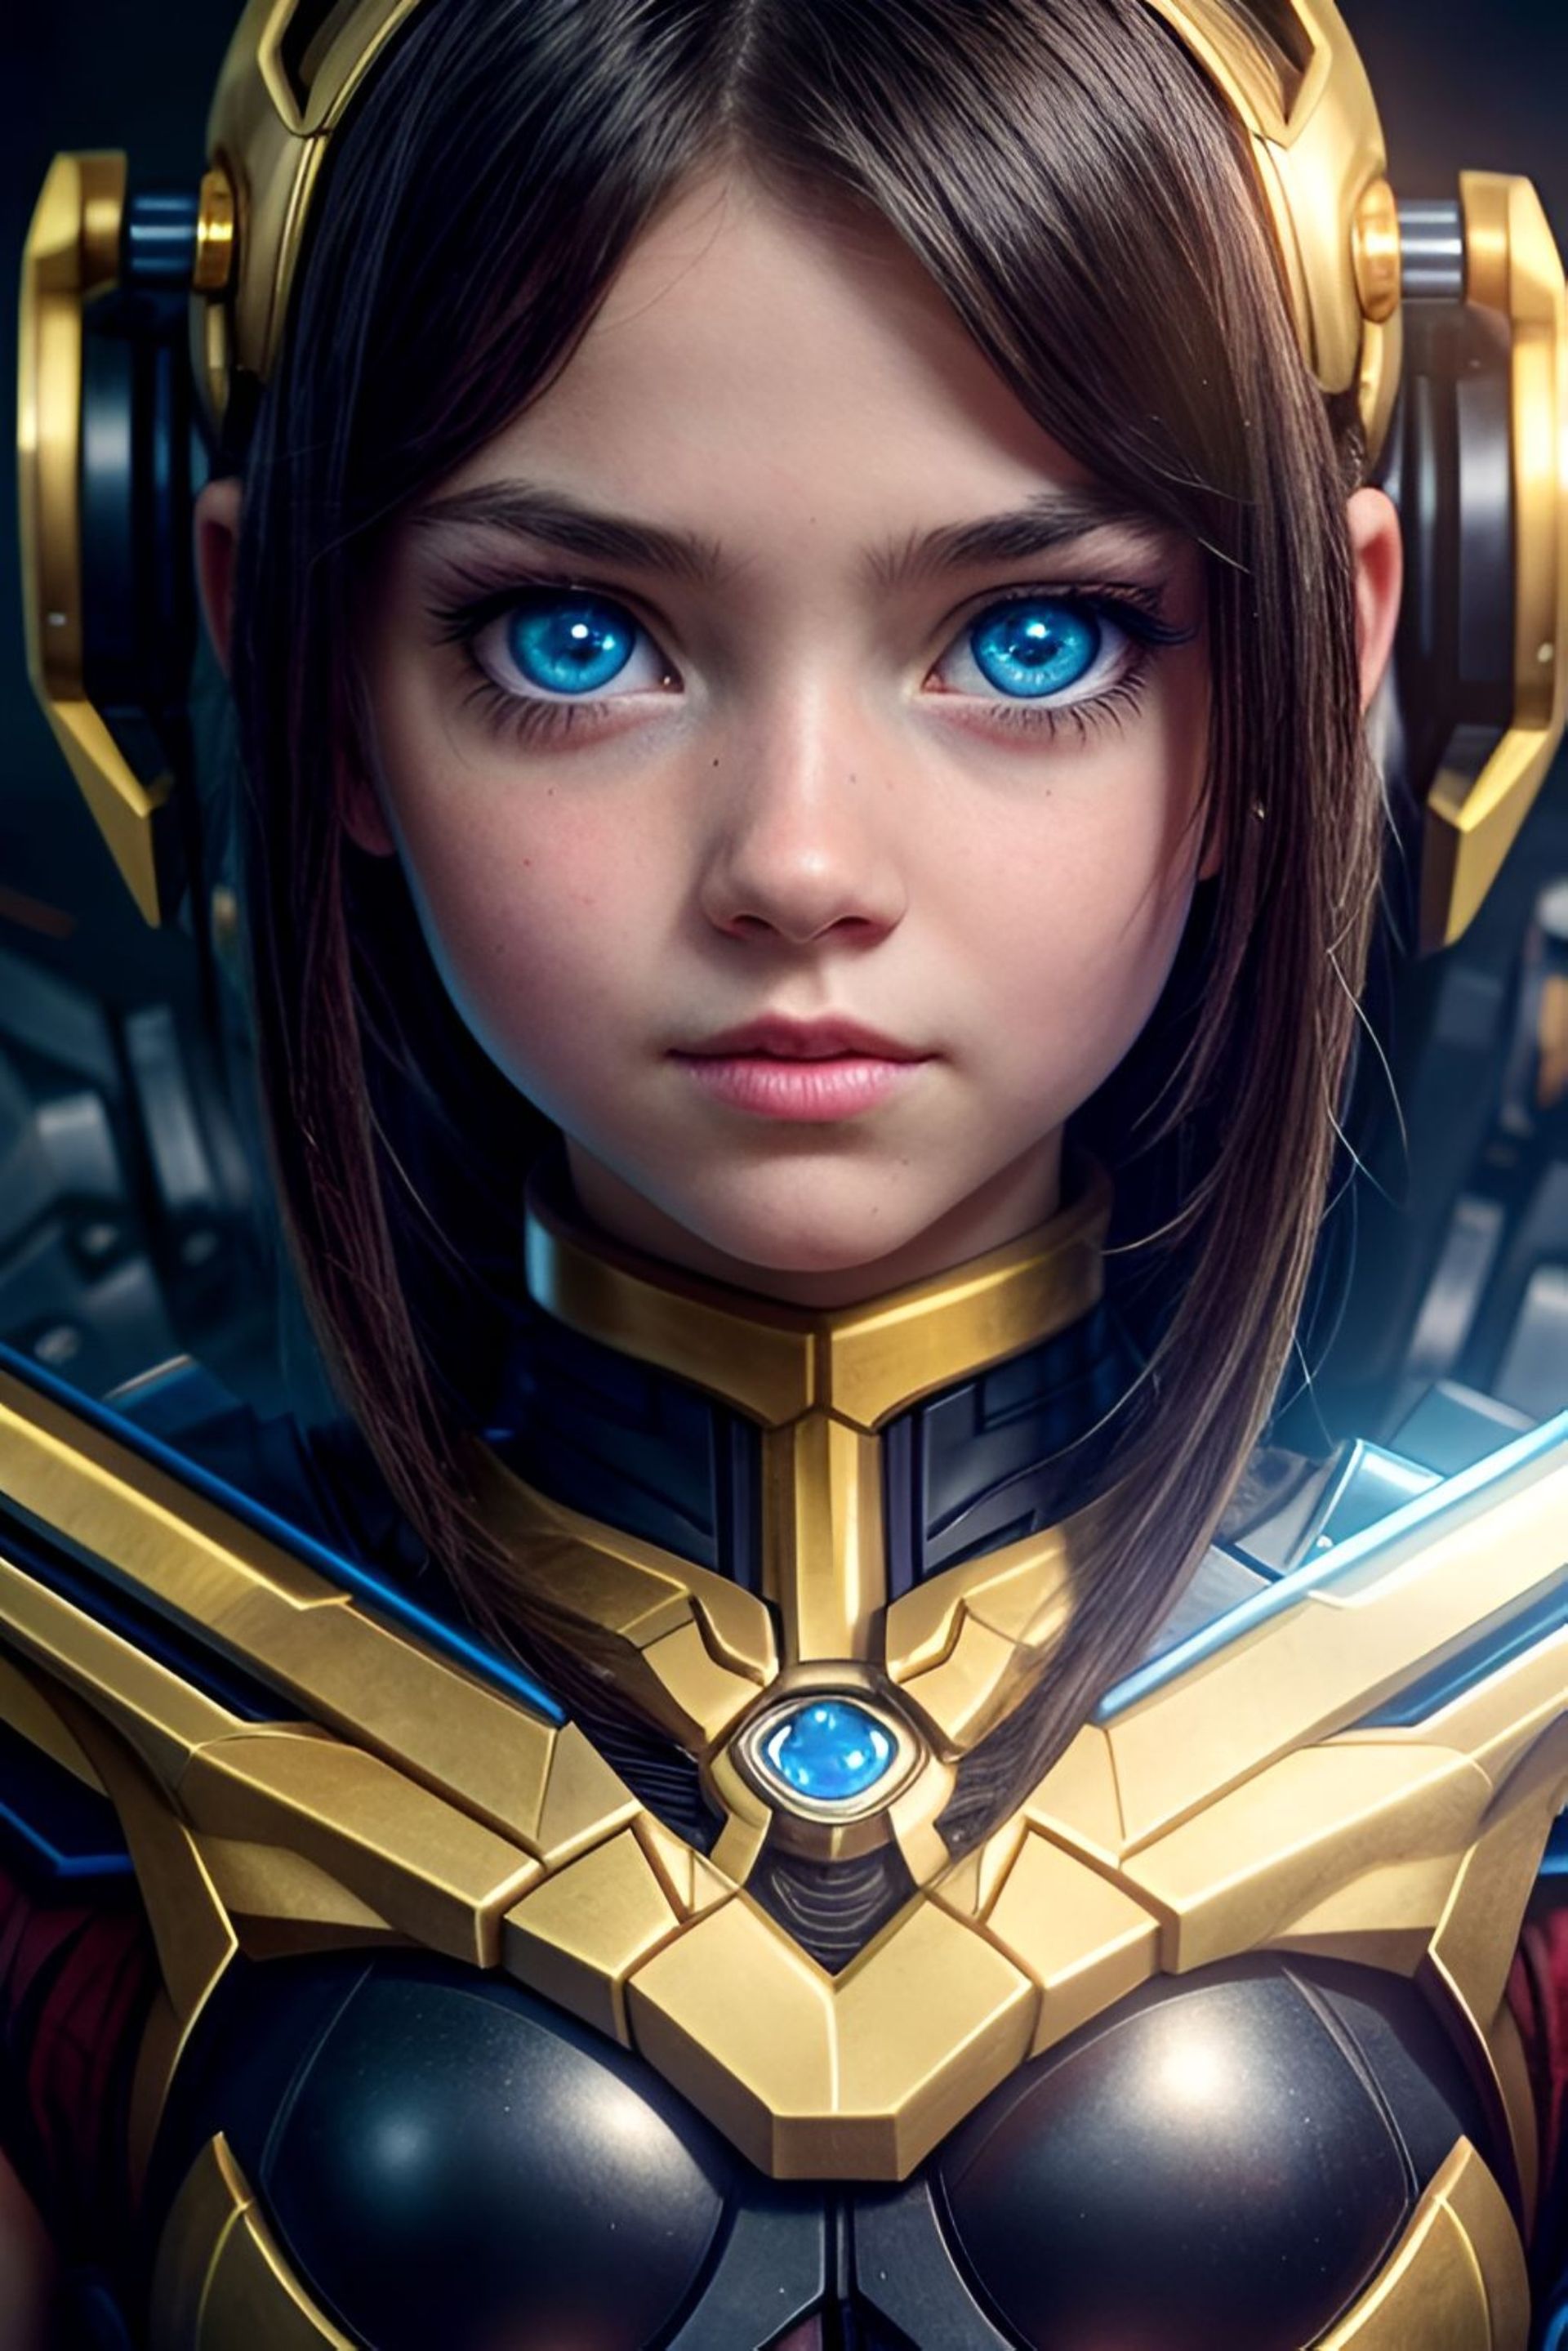 Бесплатное фото Девушка, робот, с каштановыми волосами и голубыми глазами.